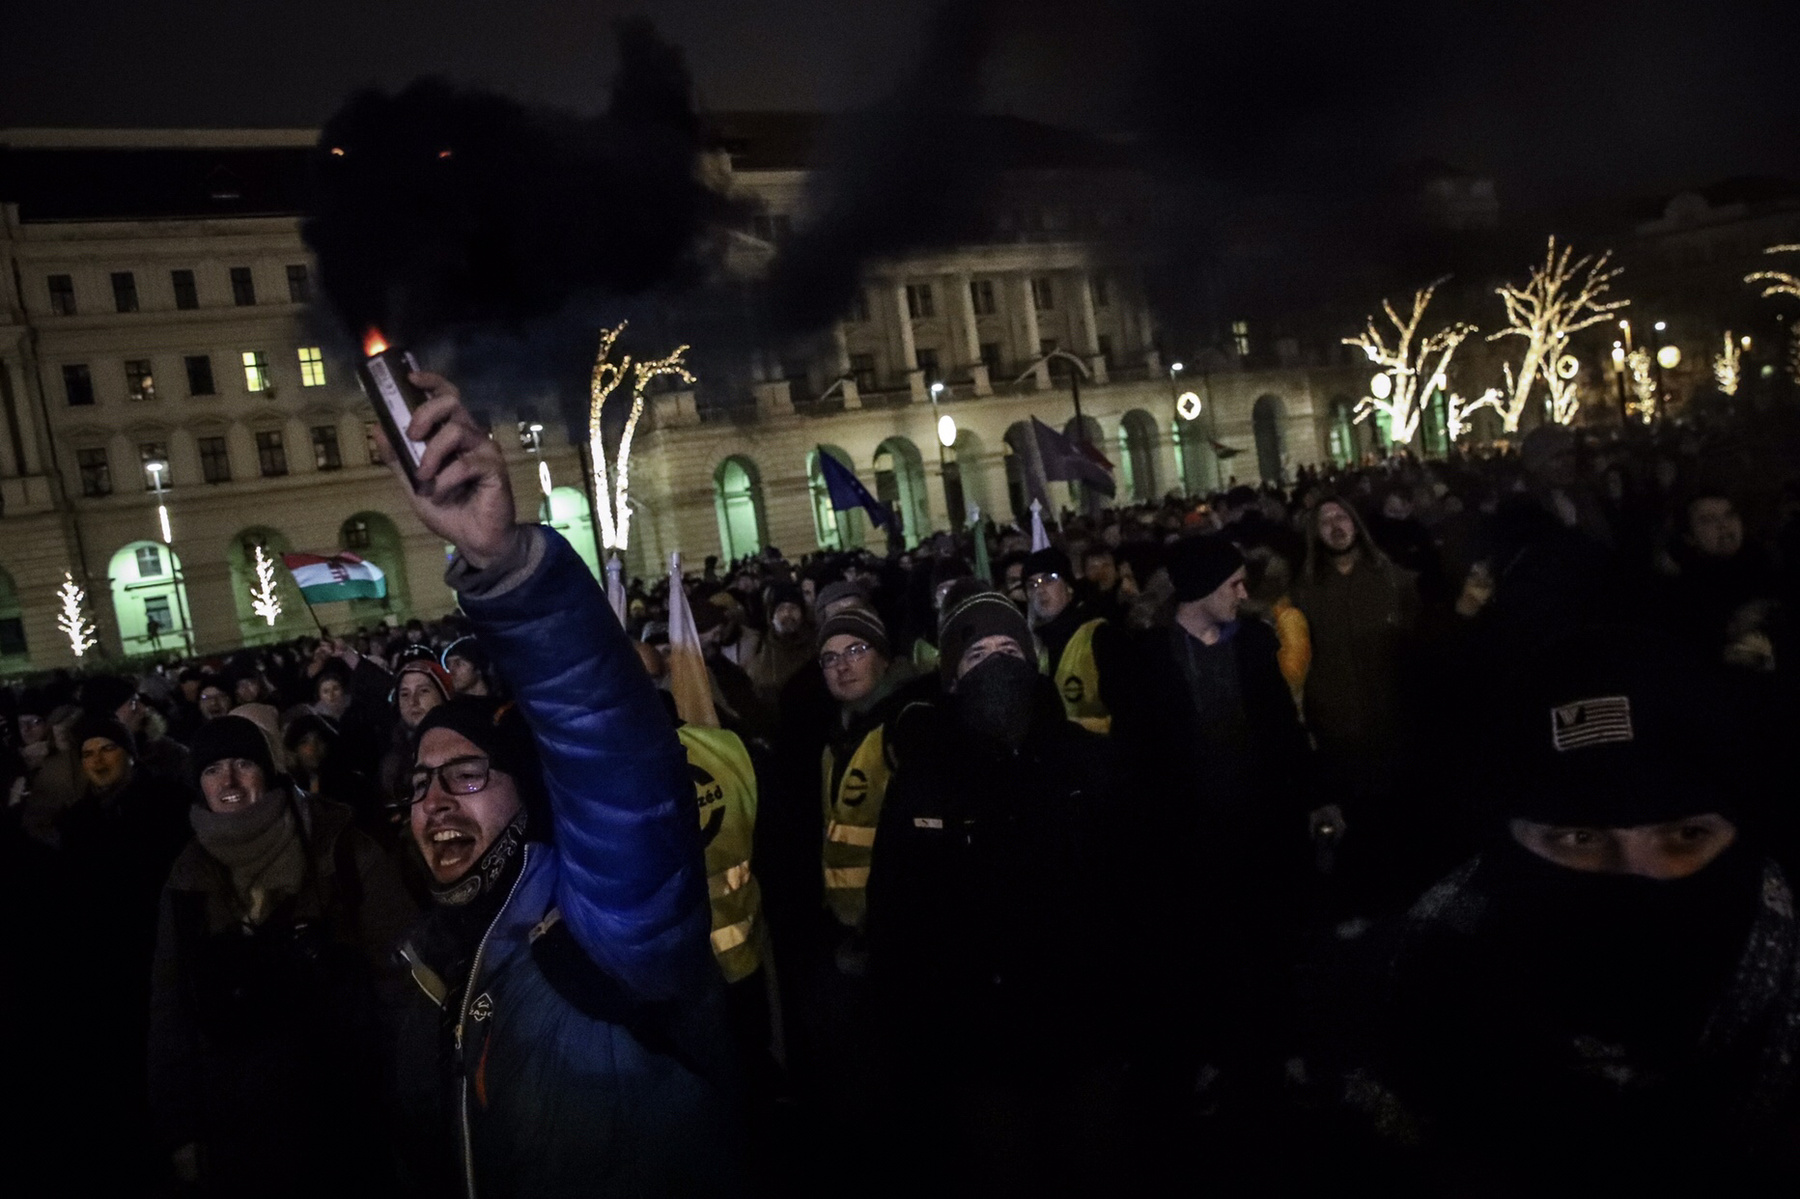 Éjfél után a tüntetők elkezdtek szétszéledni: 100-150 ember a Kossuth téren maradt még egy darabig, egy nagyobb csoport pedig a Várba indult. A Sándor-palota előtt még egy darabig skandáltak, aztán továbbmentek és a Halászbástyánál elénekelték a Himnuszt. 